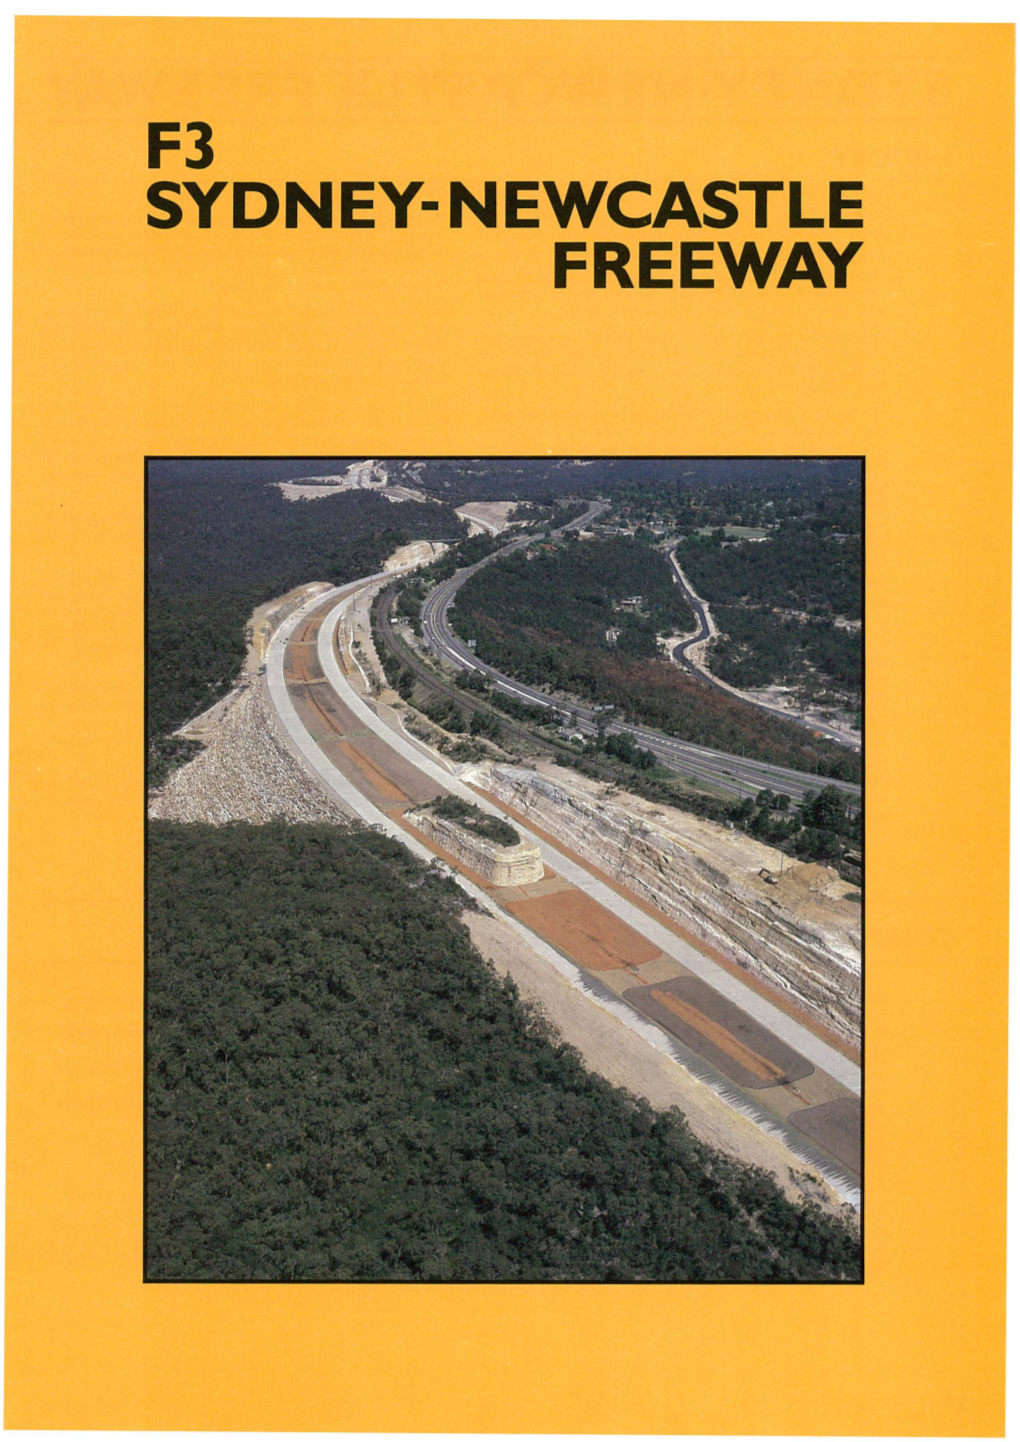 Sydney-Newcastle Freeway Sydney-Newcastle Freeway